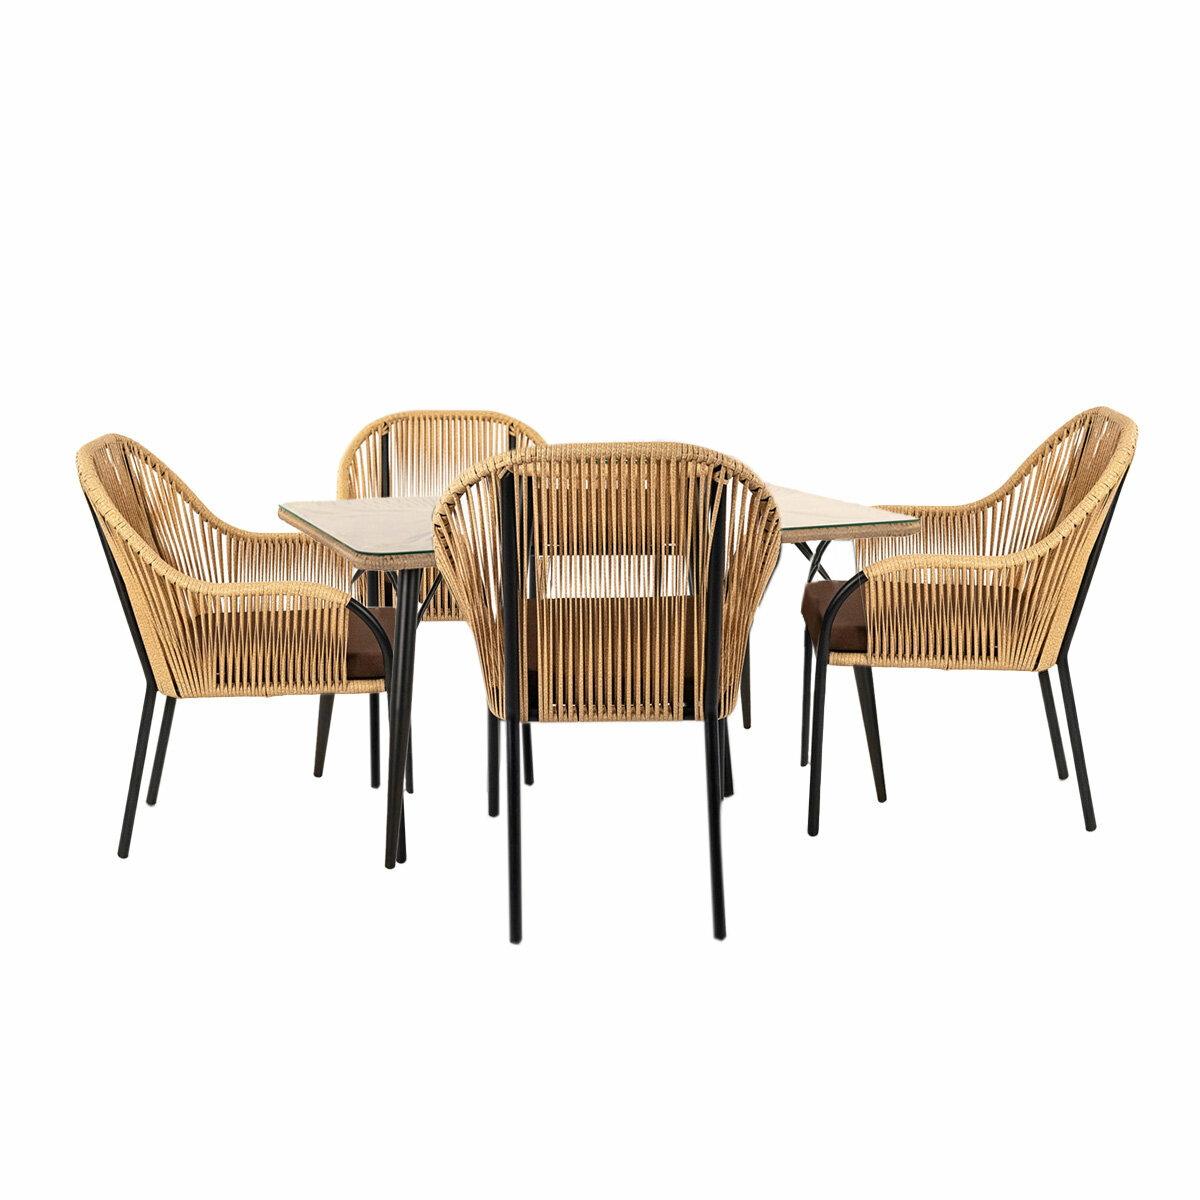 Комплект садовой мебели Alfart Nuar (4 стула 1 стол) черный/коричневый